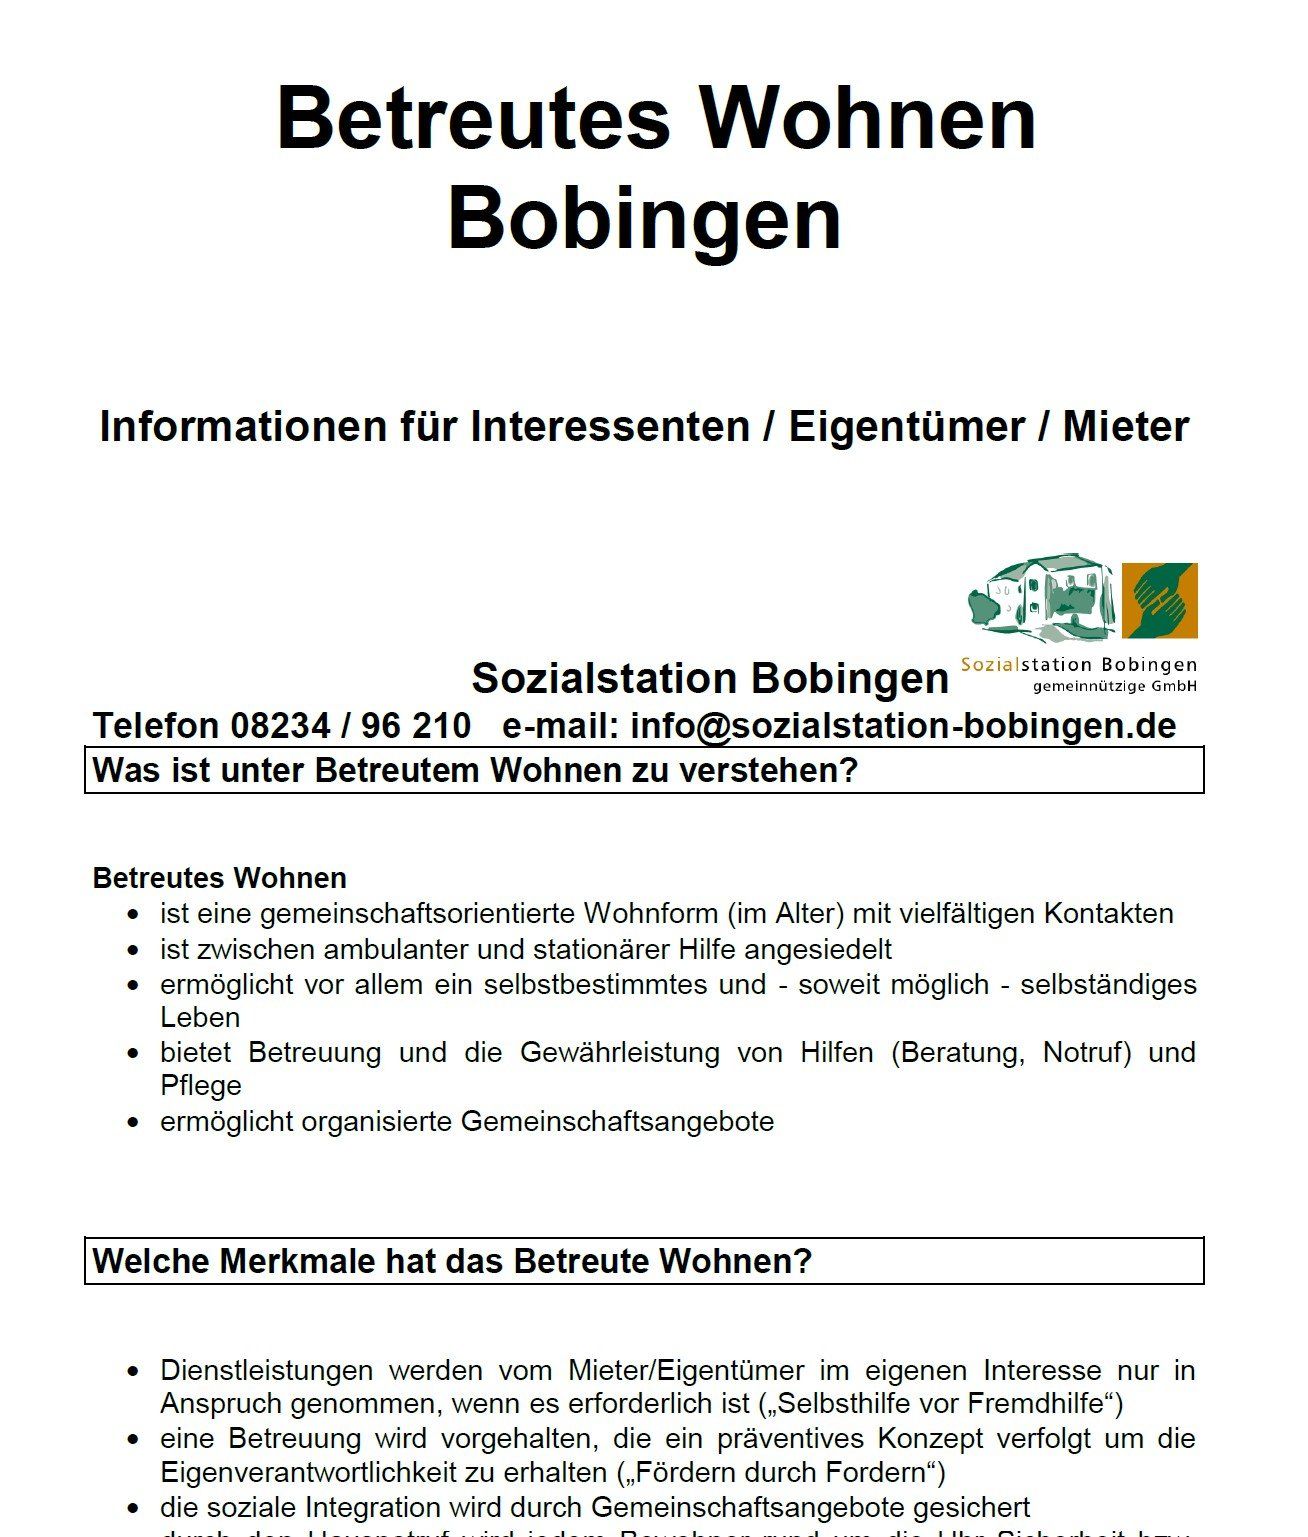 Informationsblatt über betreutes Wohnen in Bobingen